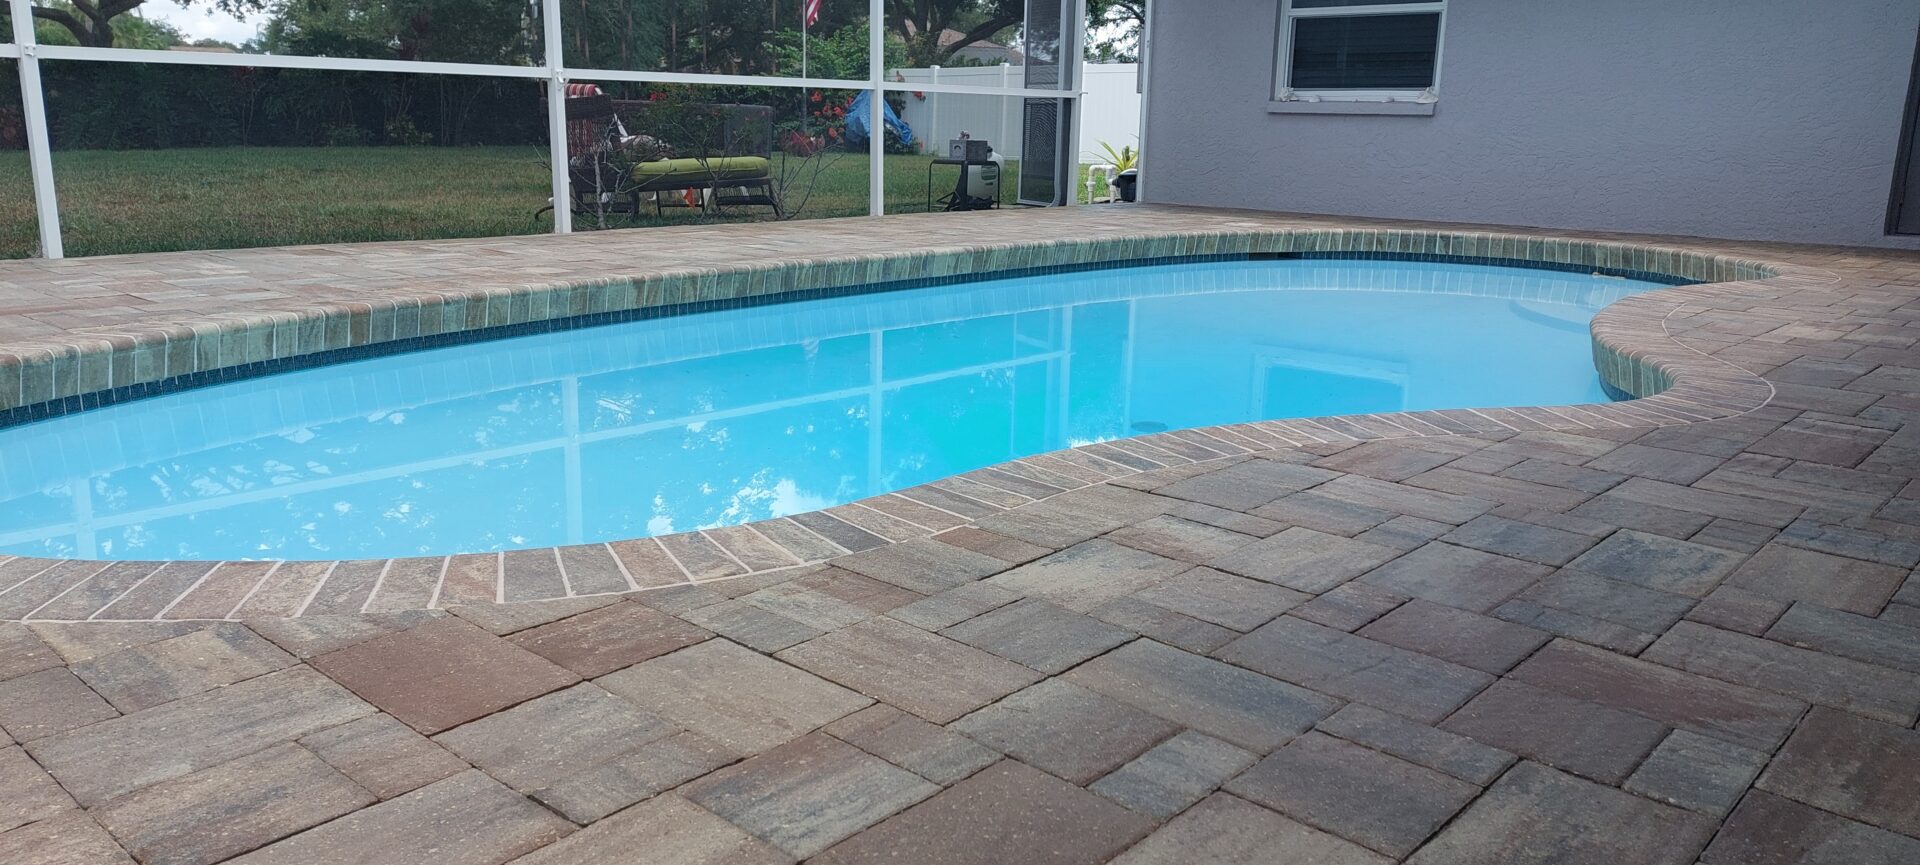 Brick Paver patio with Pool